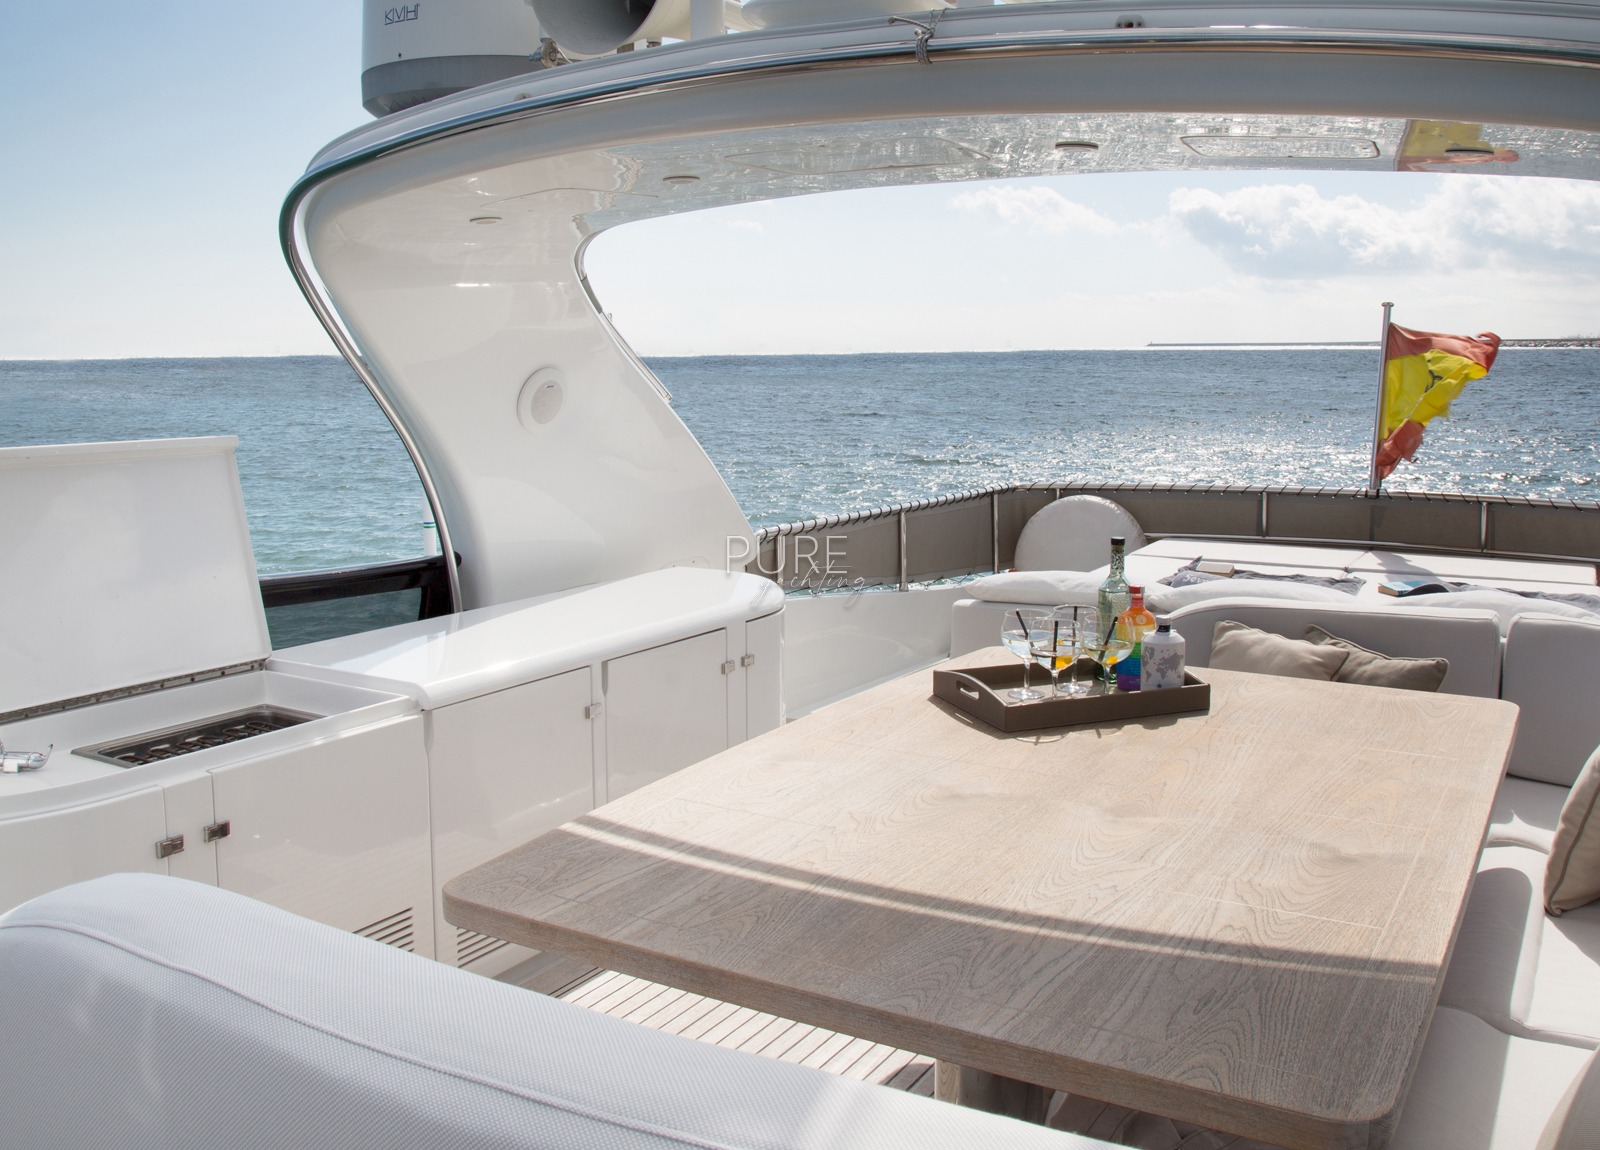 oberdeck luxusyacht maiora 28m sublime mar spanien